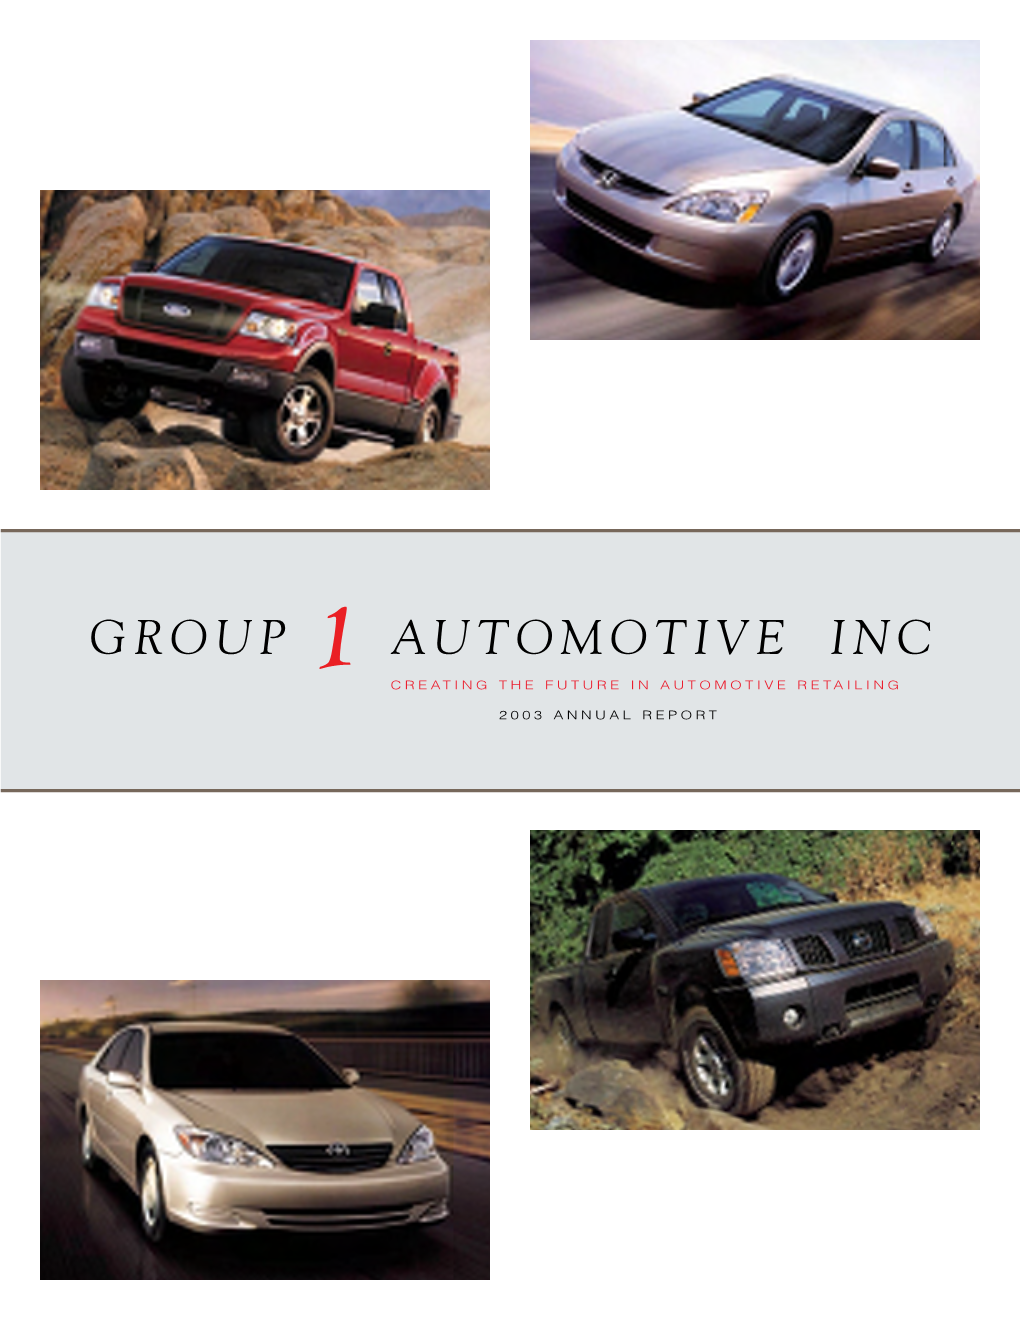 Group 1 Automotive, Inc